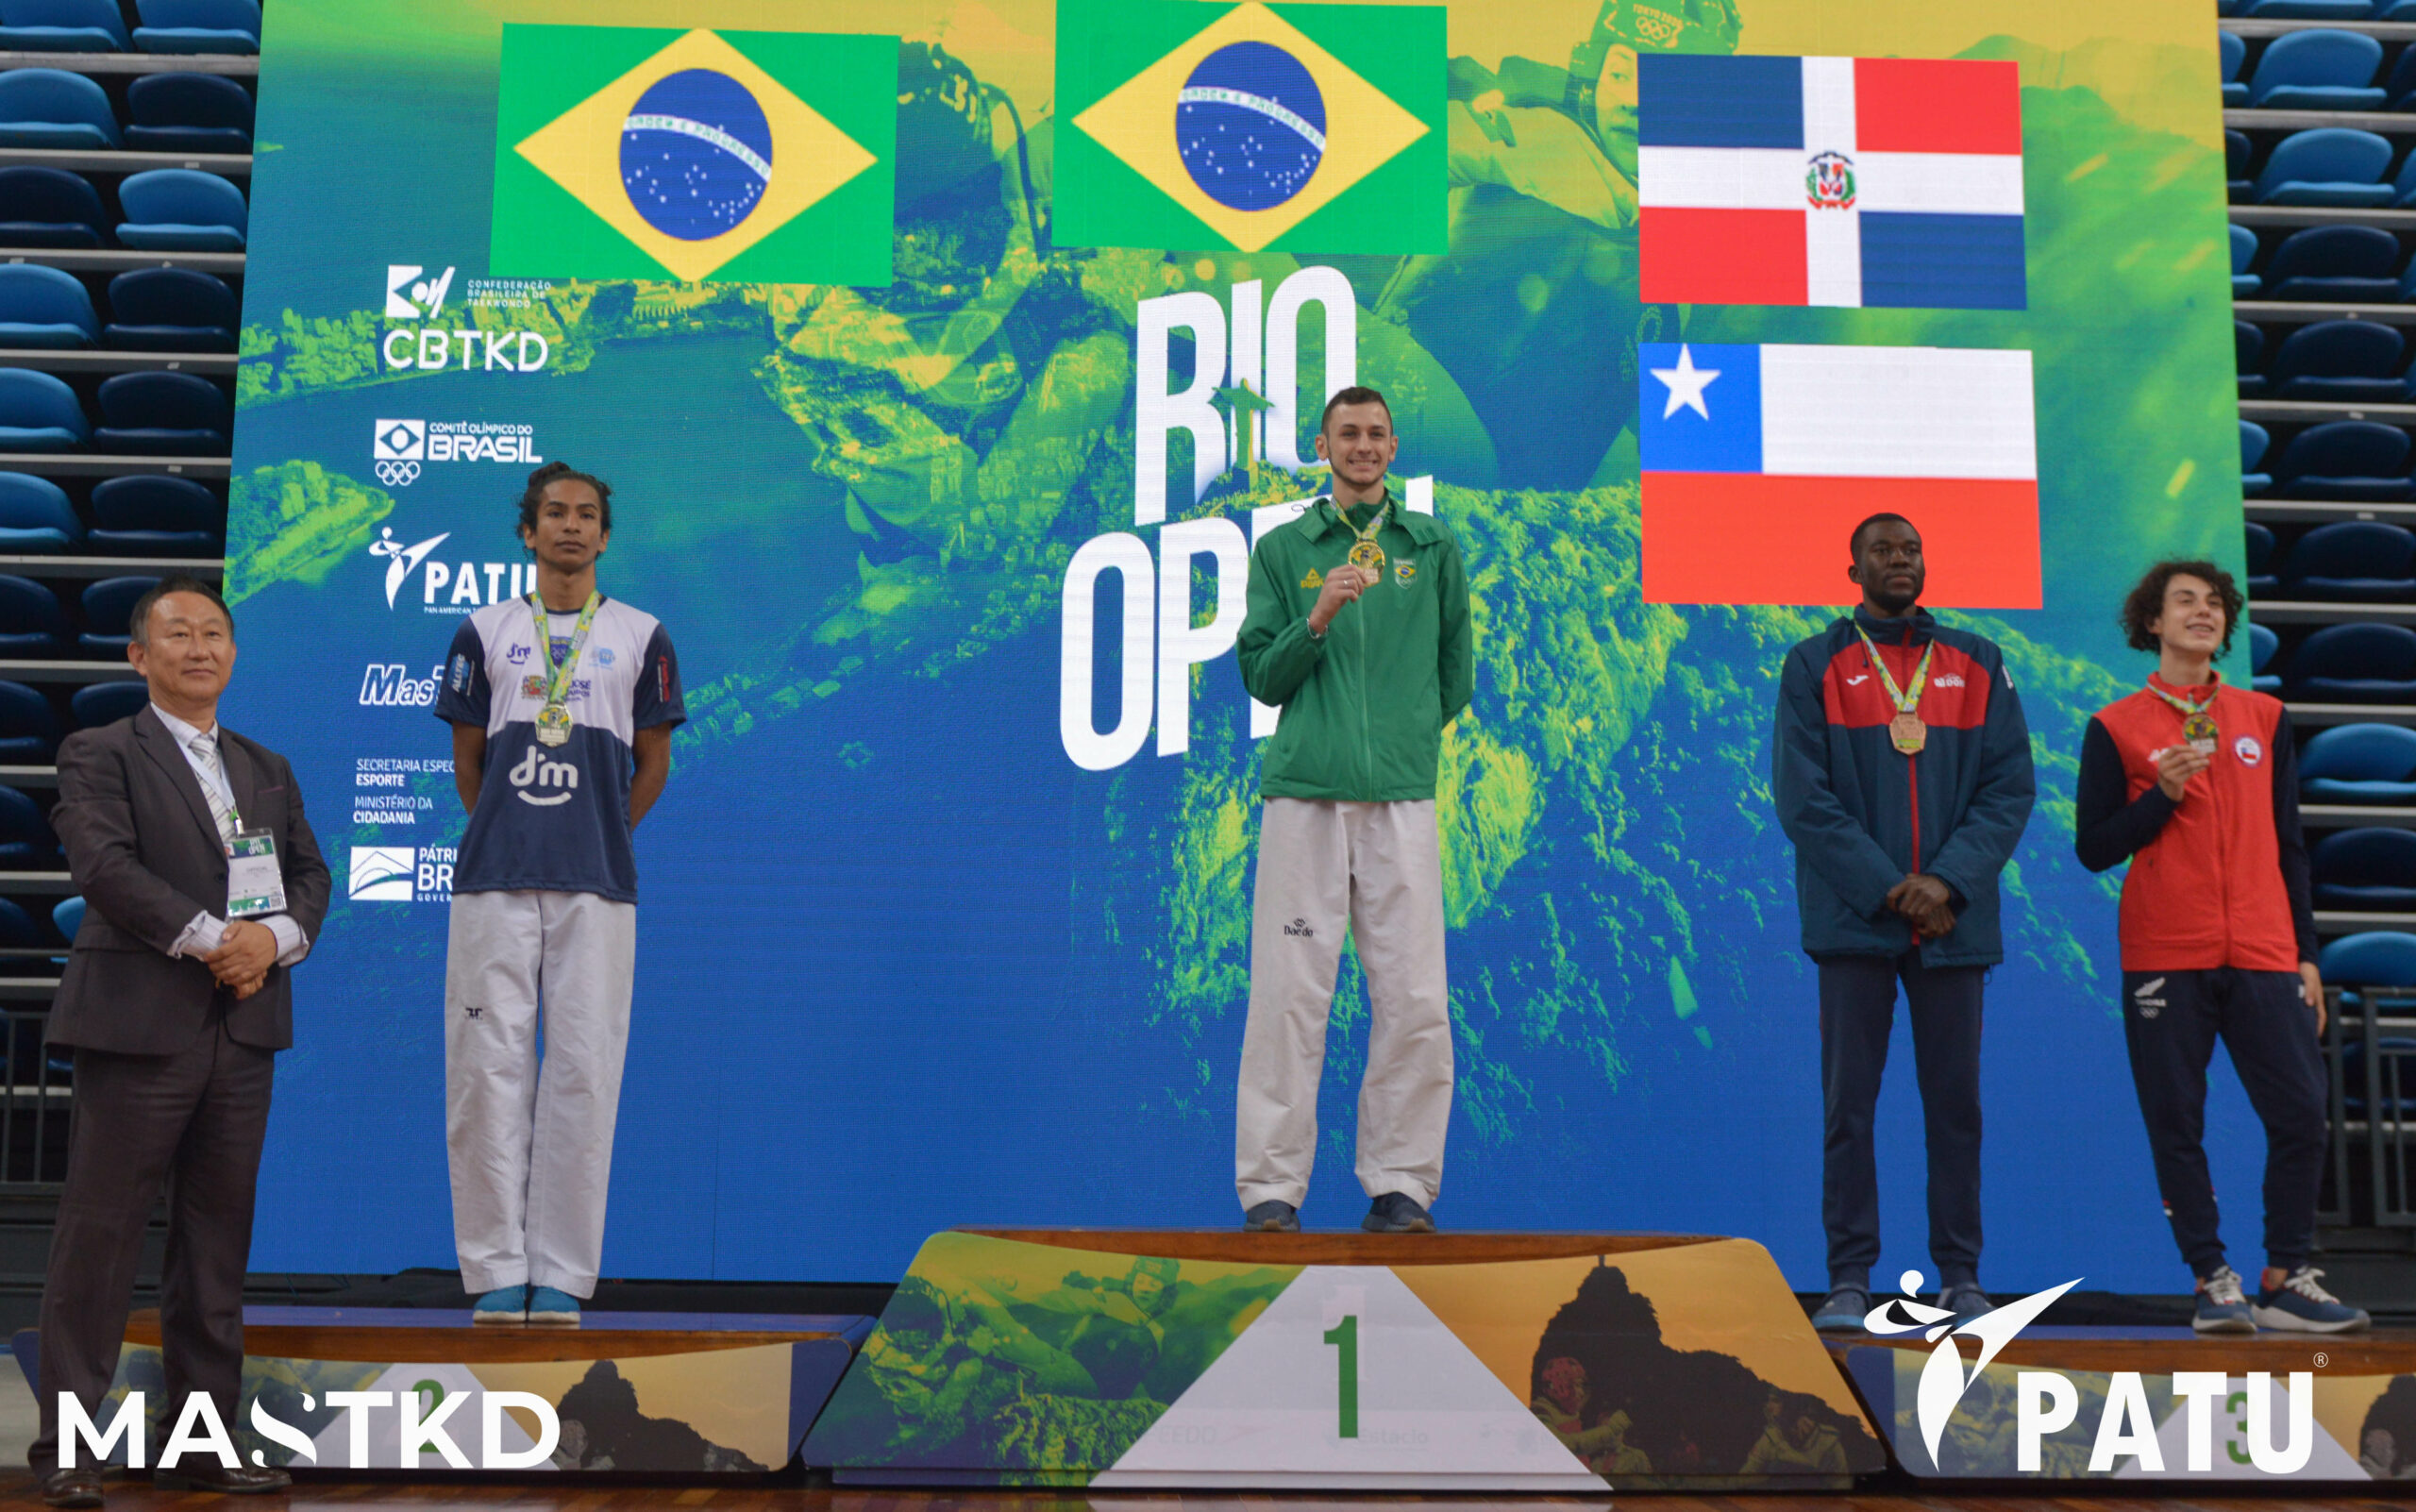 Rio Open 2022